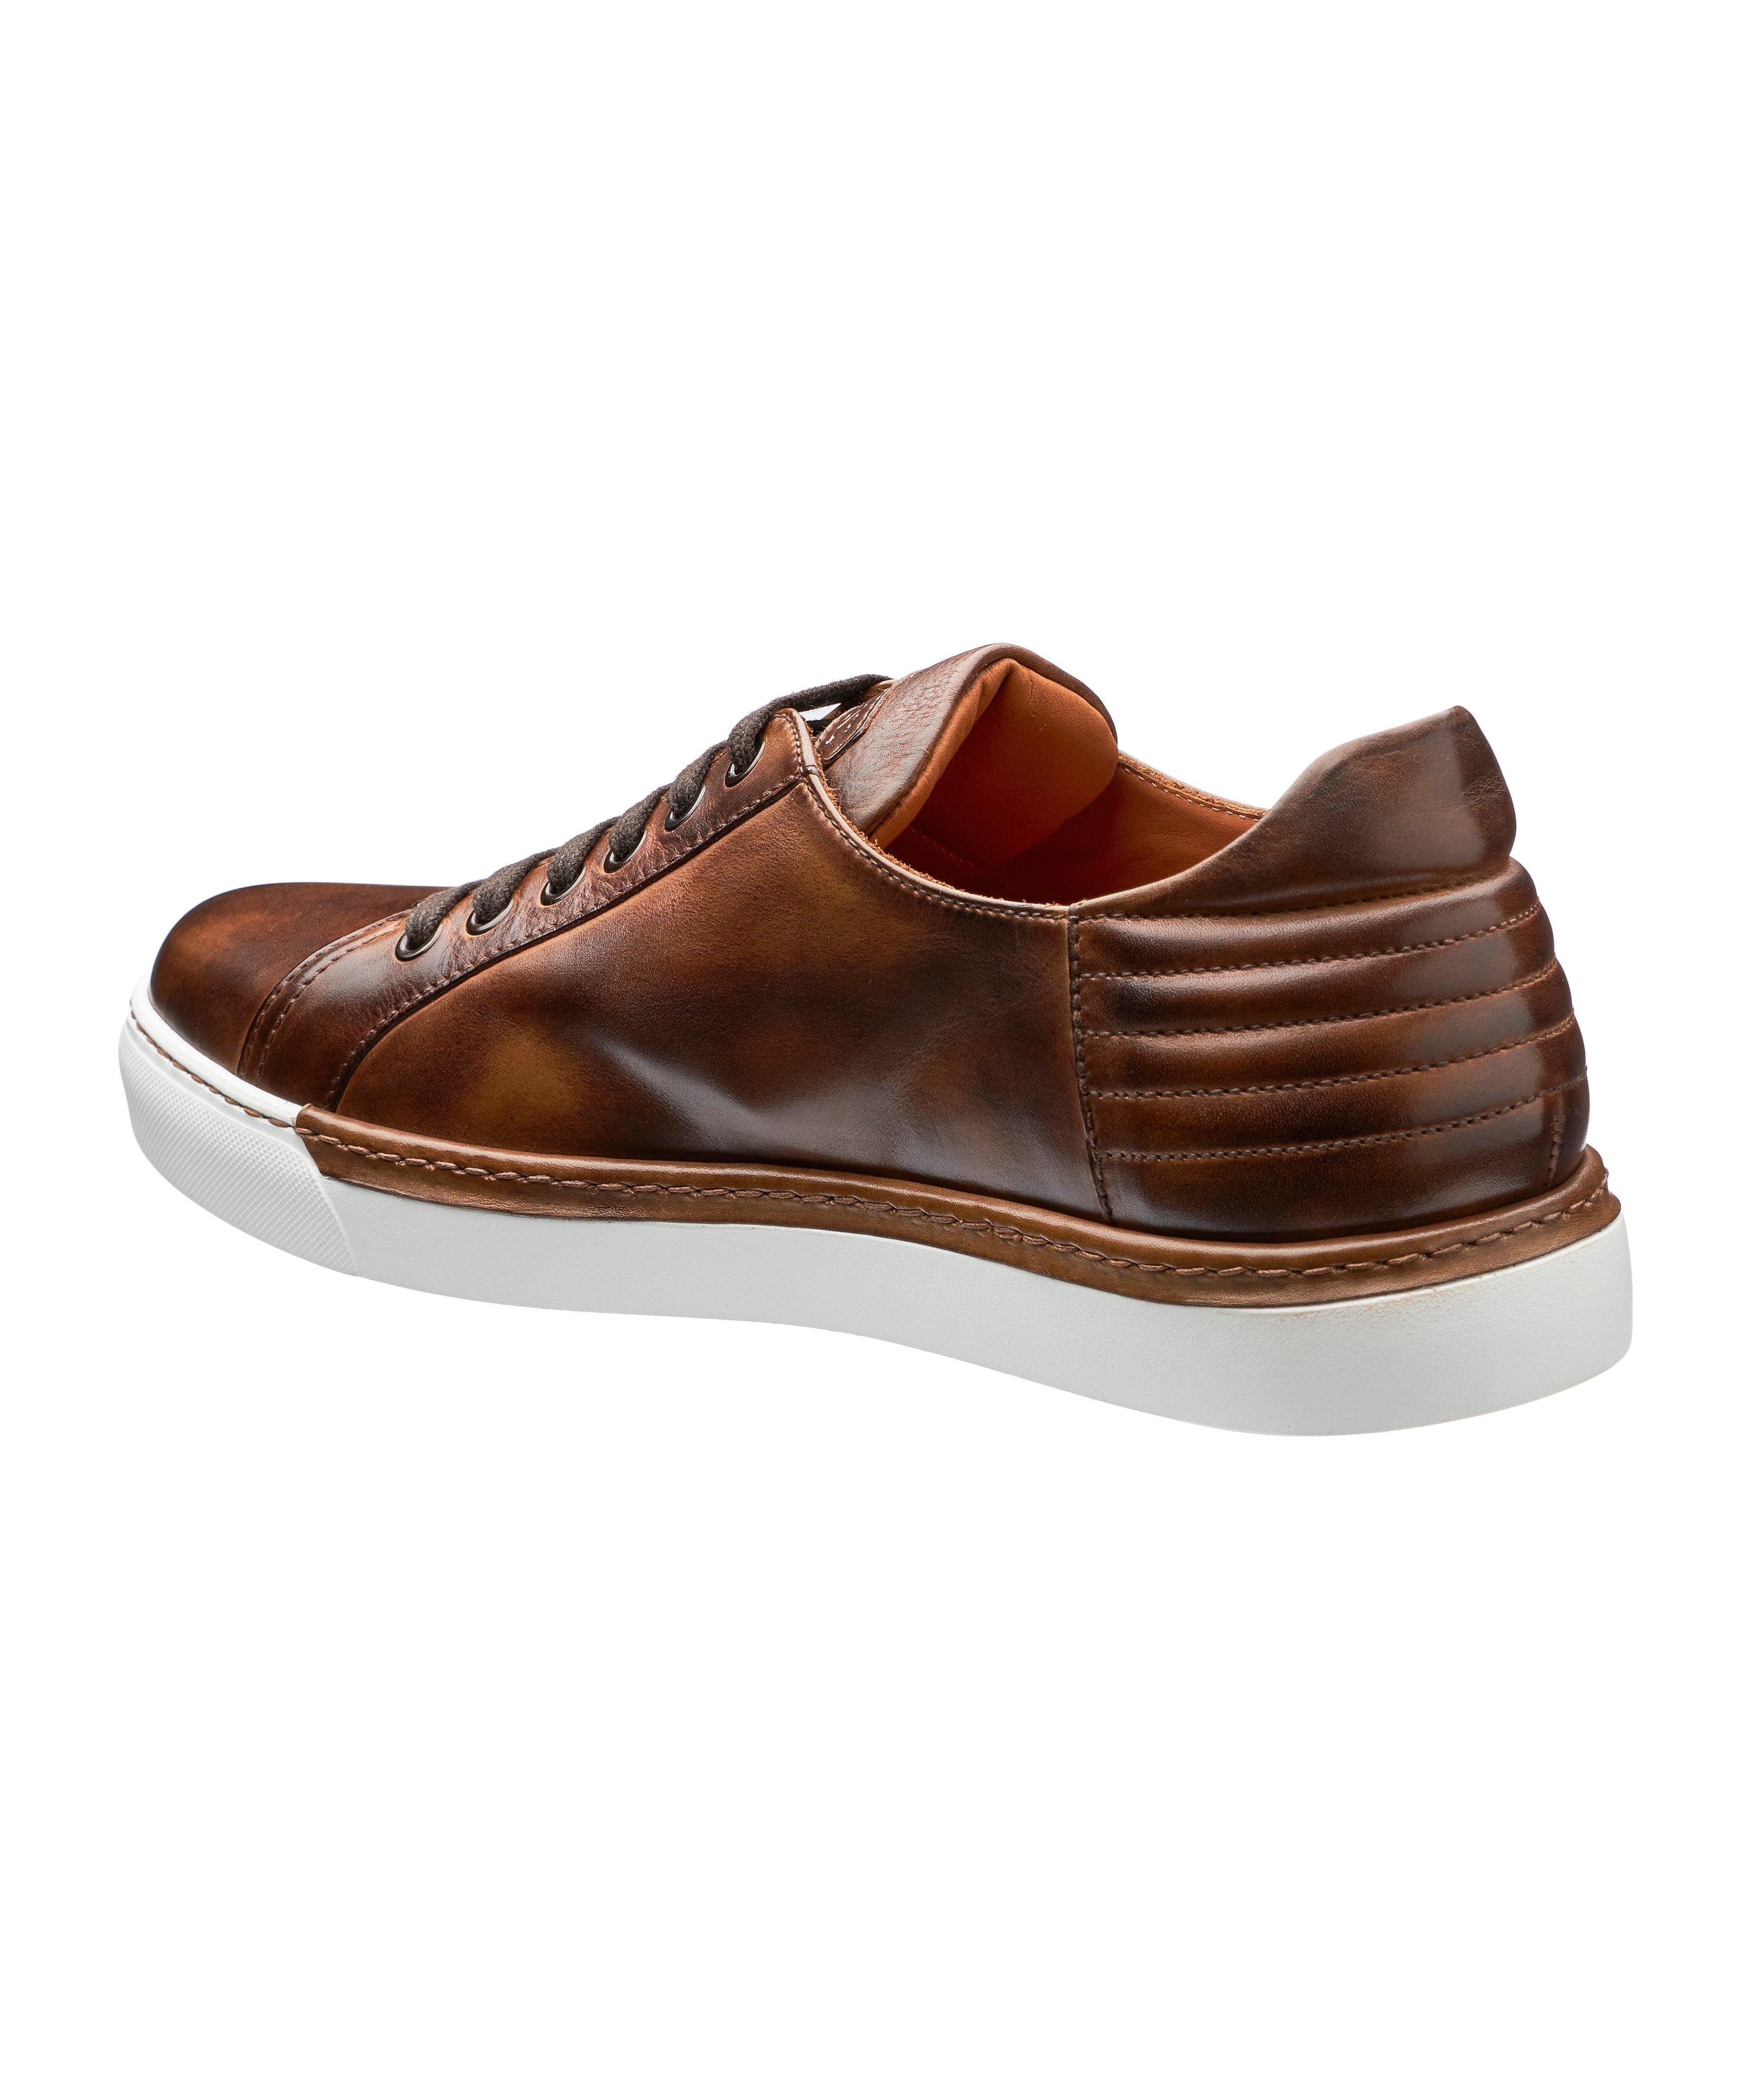 Chaussure sport en cuir bruni image 1